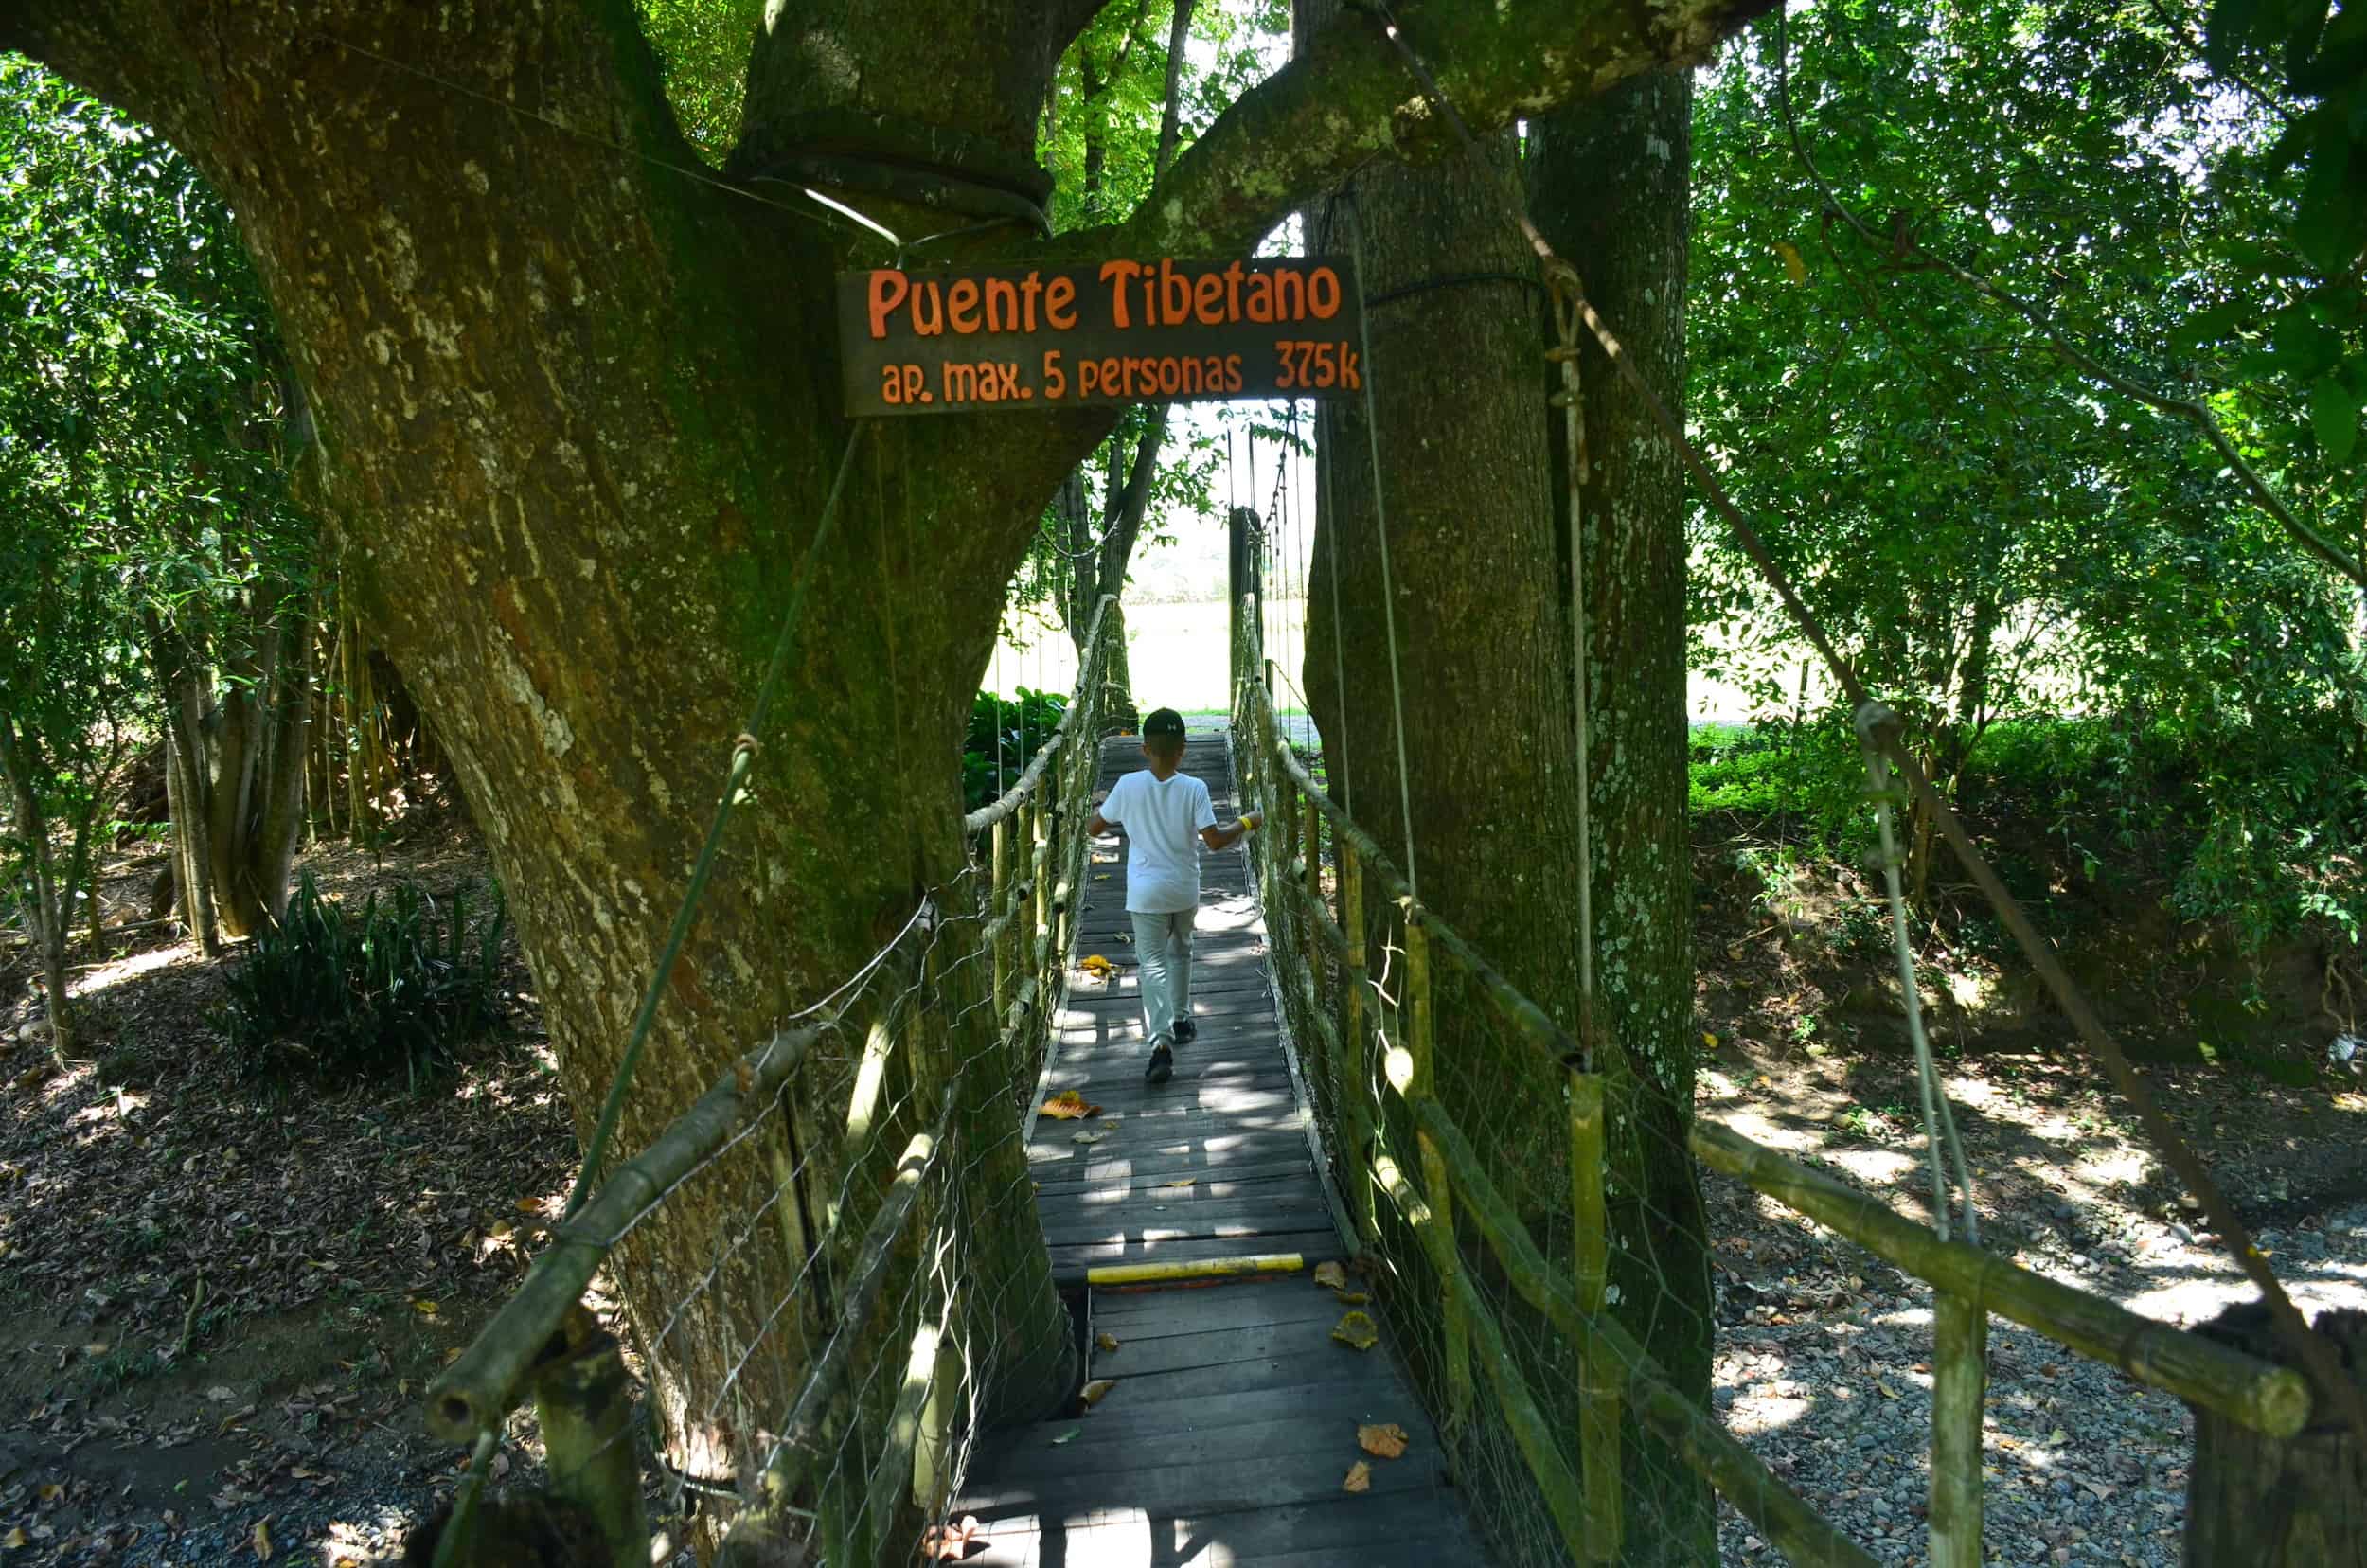 Suspension bridge at Grape National Park in La Unión, Valle del Cauca, Colombia